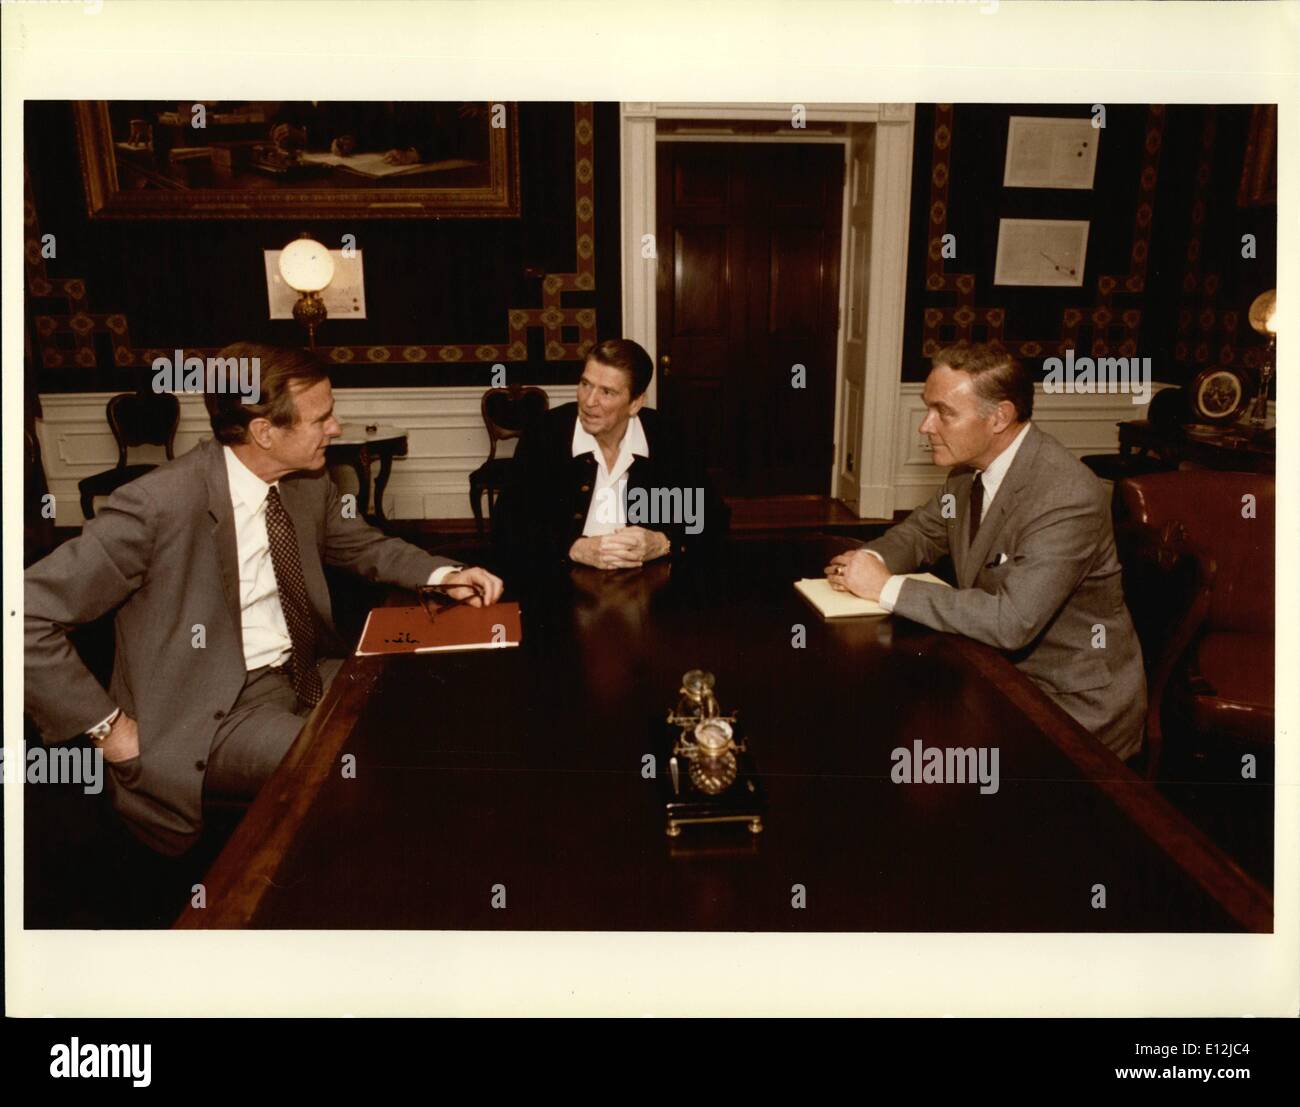 24 février 2012 - Le président Reagan se réunit avec le Vice-président George Bush et le secrétaire d'État Alexander Haig dans Treaty Room, 1er étage résidence, comme Haig rapports sur voyage à l'étranger. Banque D'Images